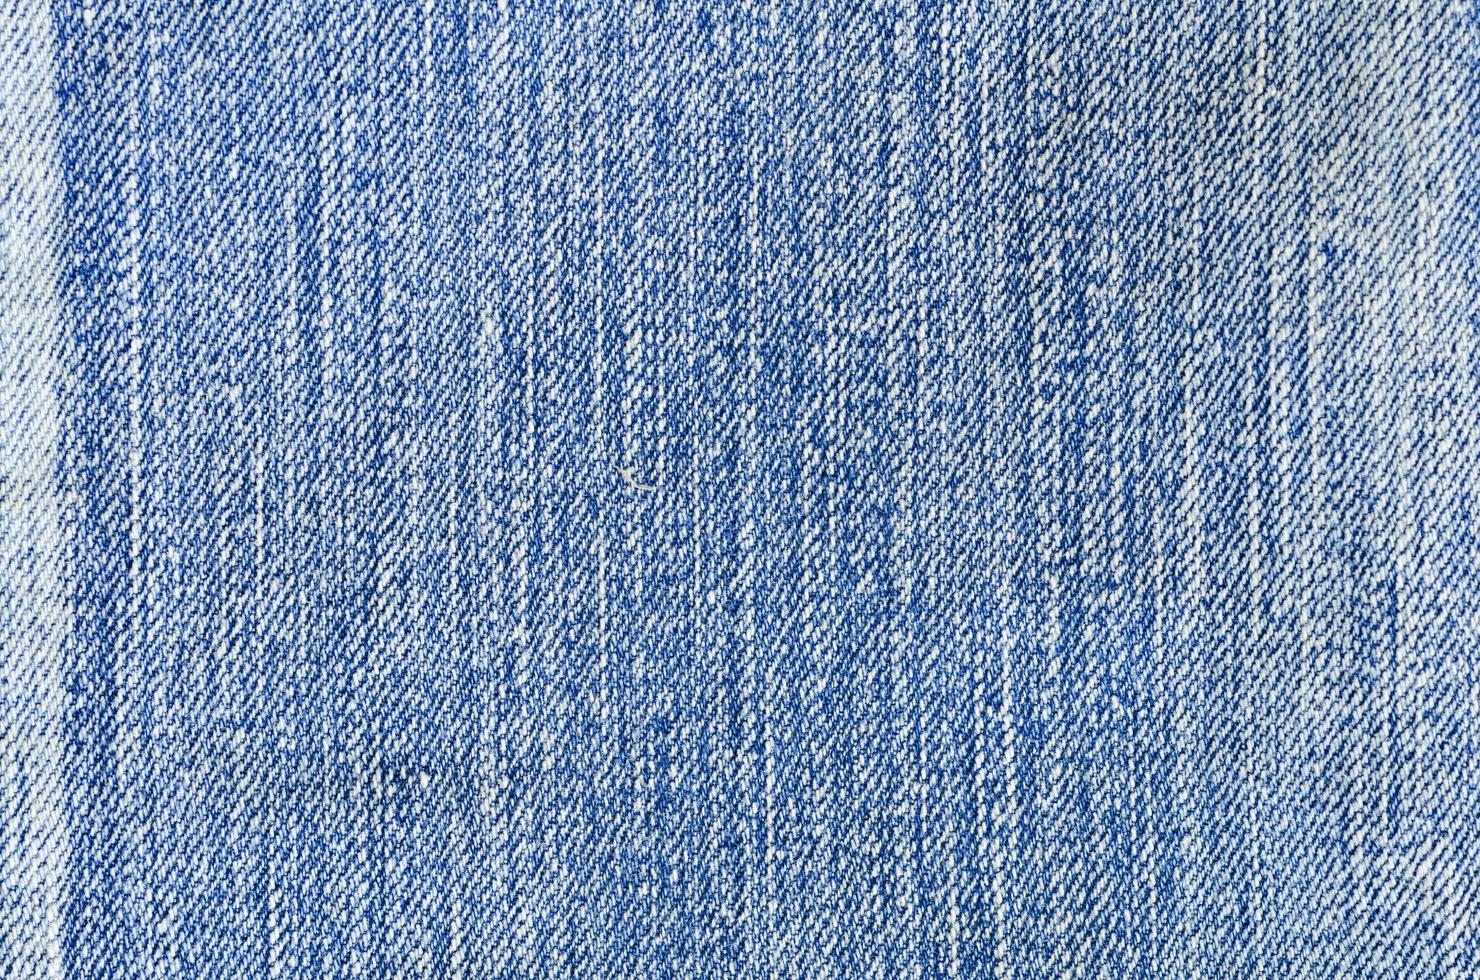 bleu jeans texture denim fond la mode modèle photo